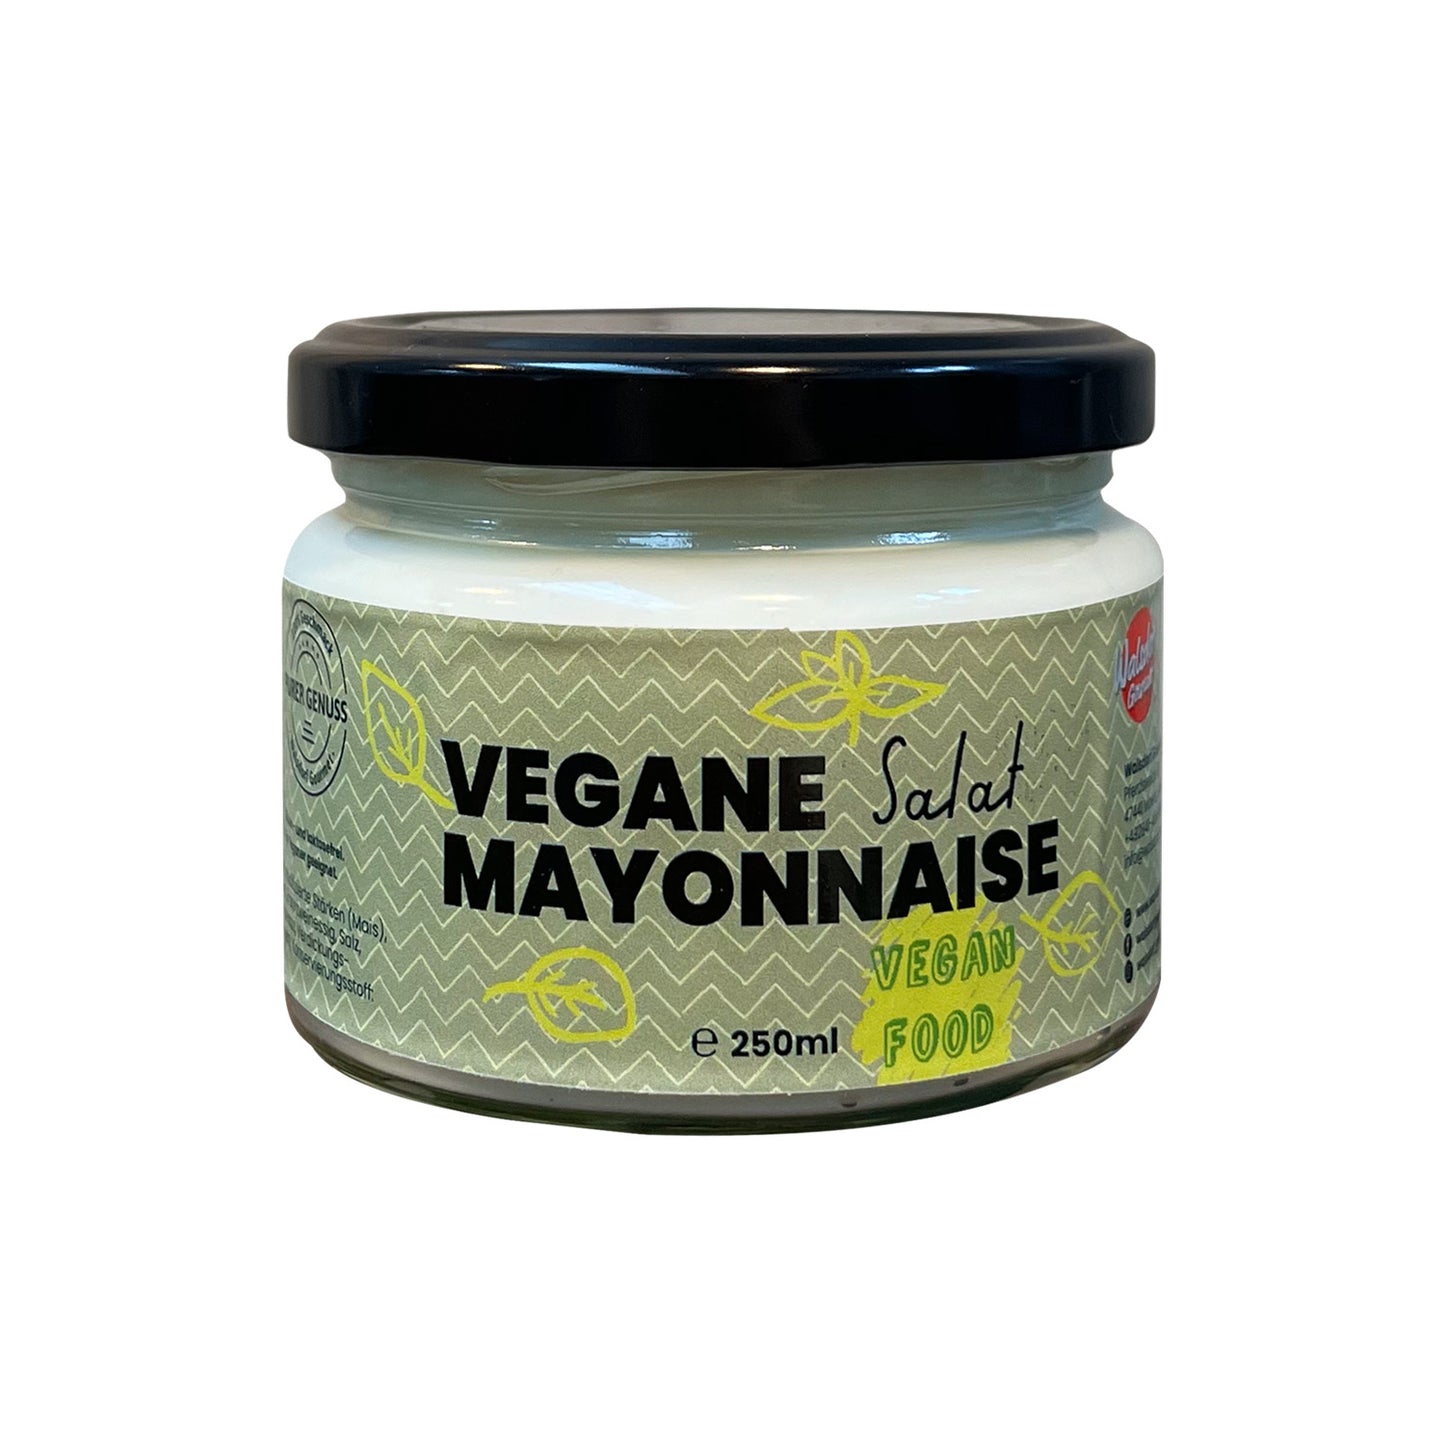 Vegane Salat Mayonnaise 250ml Glas